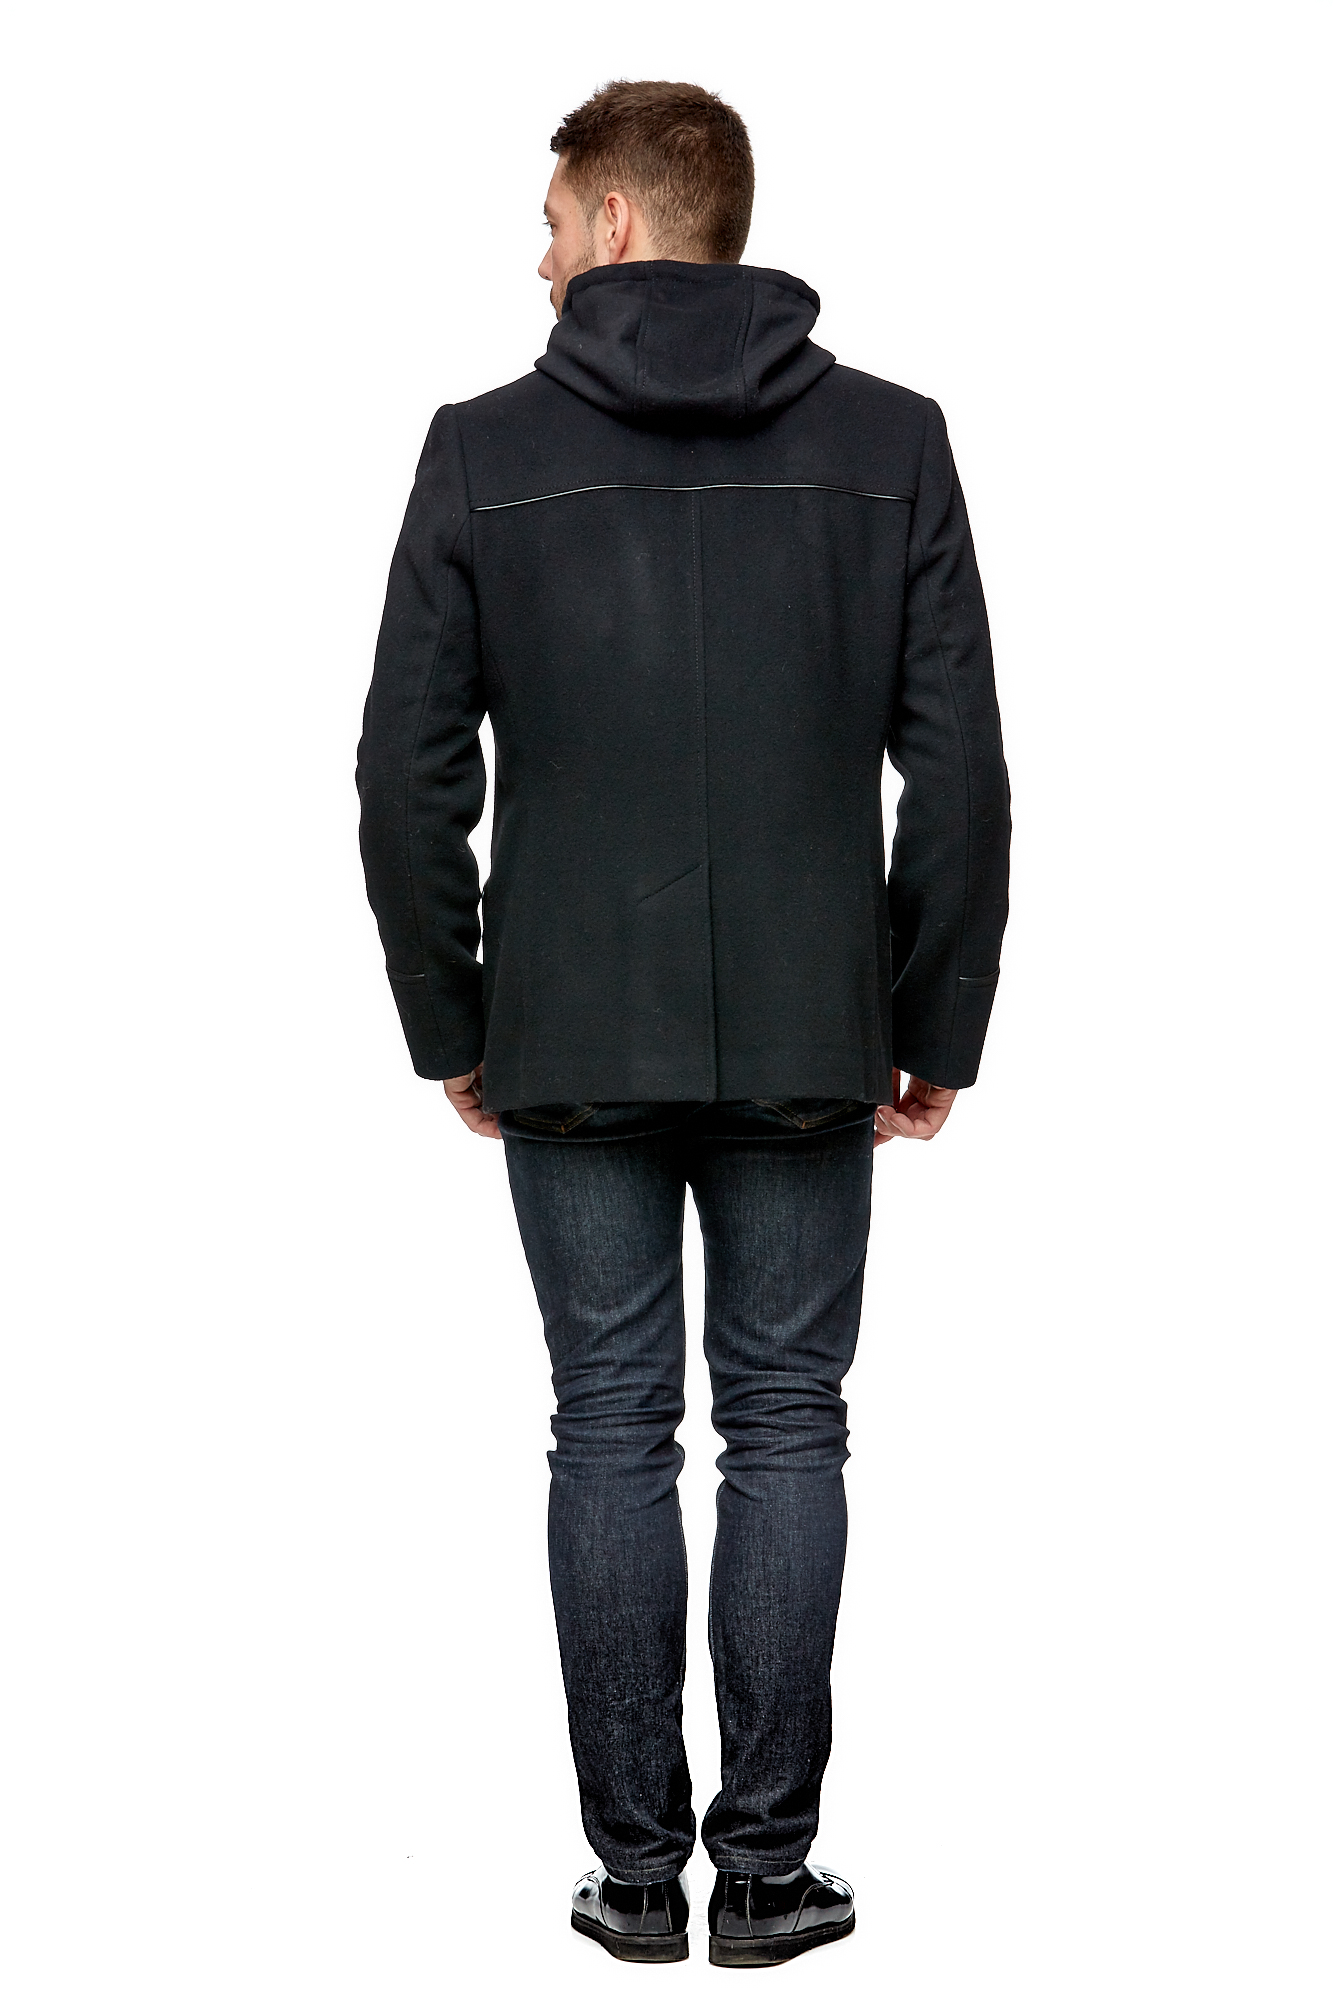 Мужское пальто из текстиля с воротником 8002075-3